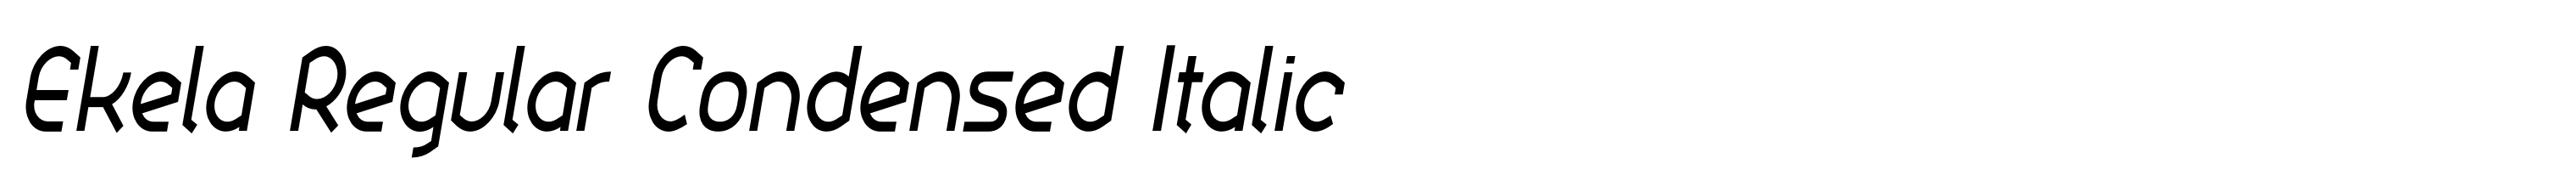 Ekela Regular Condensed Italic